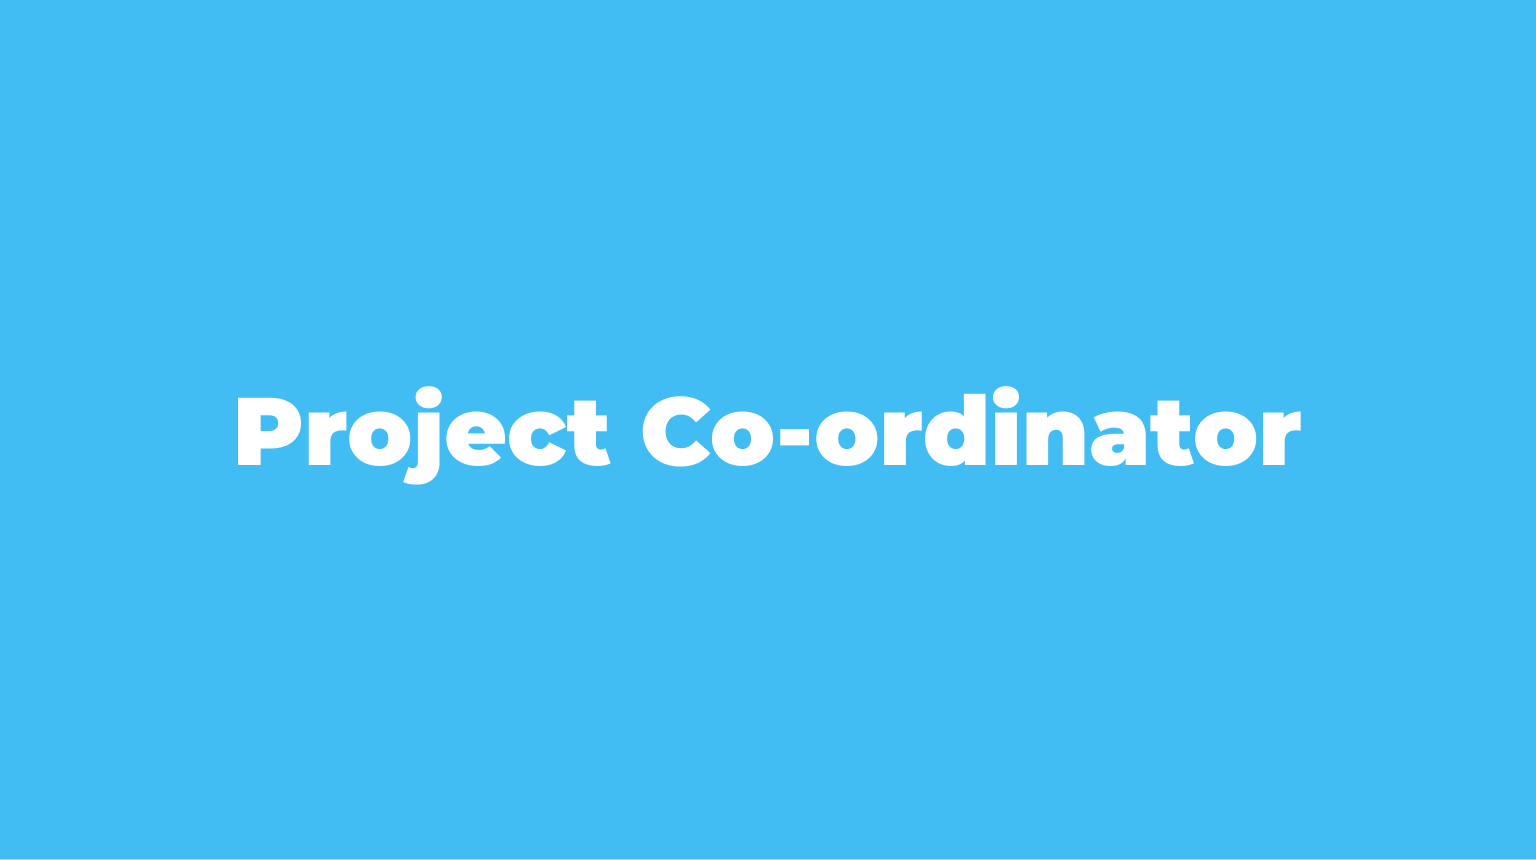 Project Co-ordinator (1)